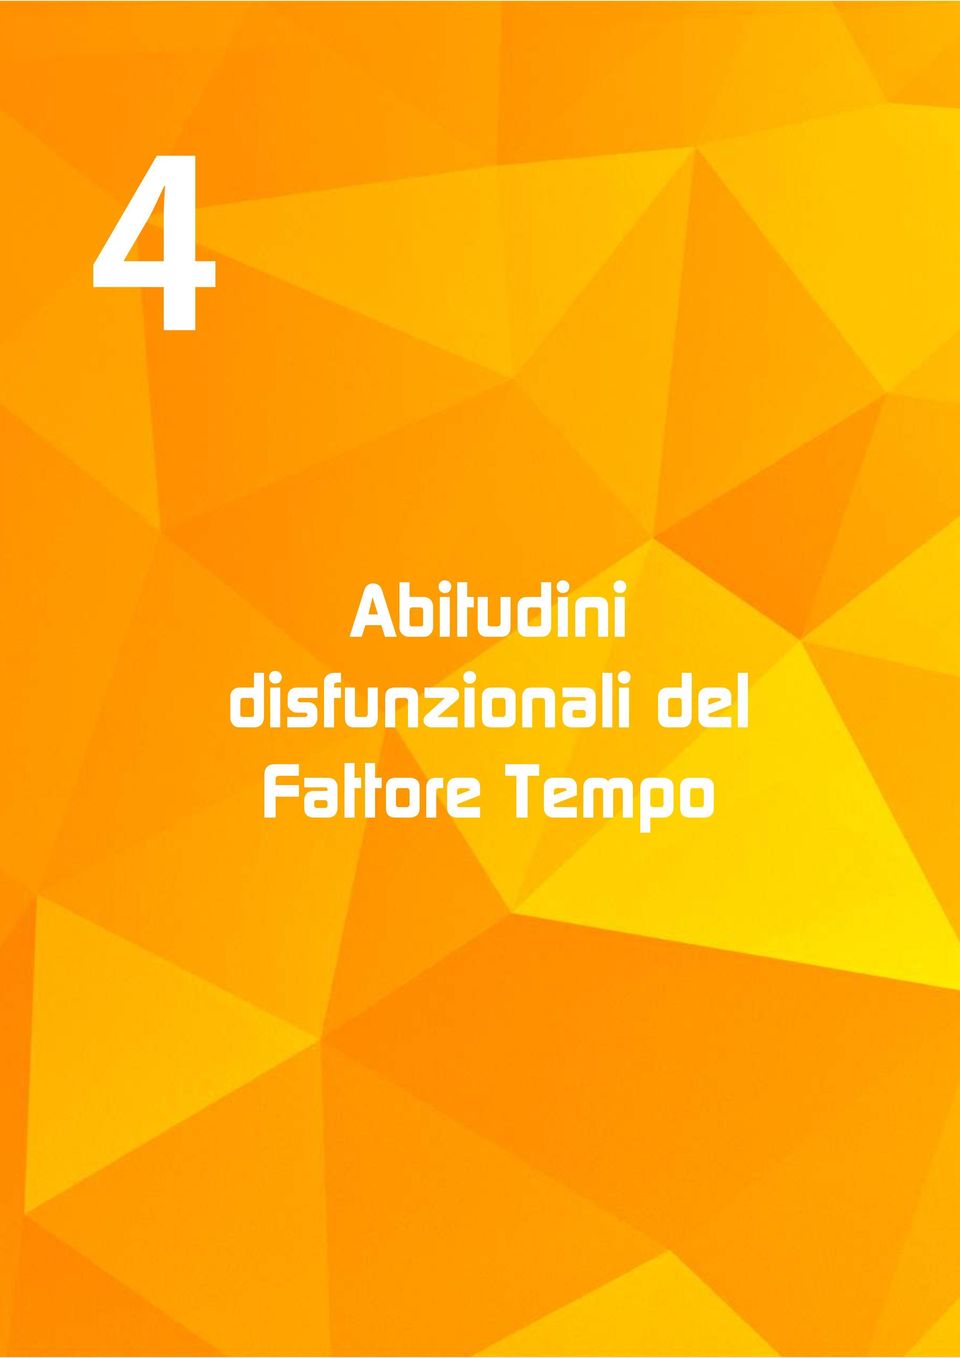 Fattore Tempo 2015 -